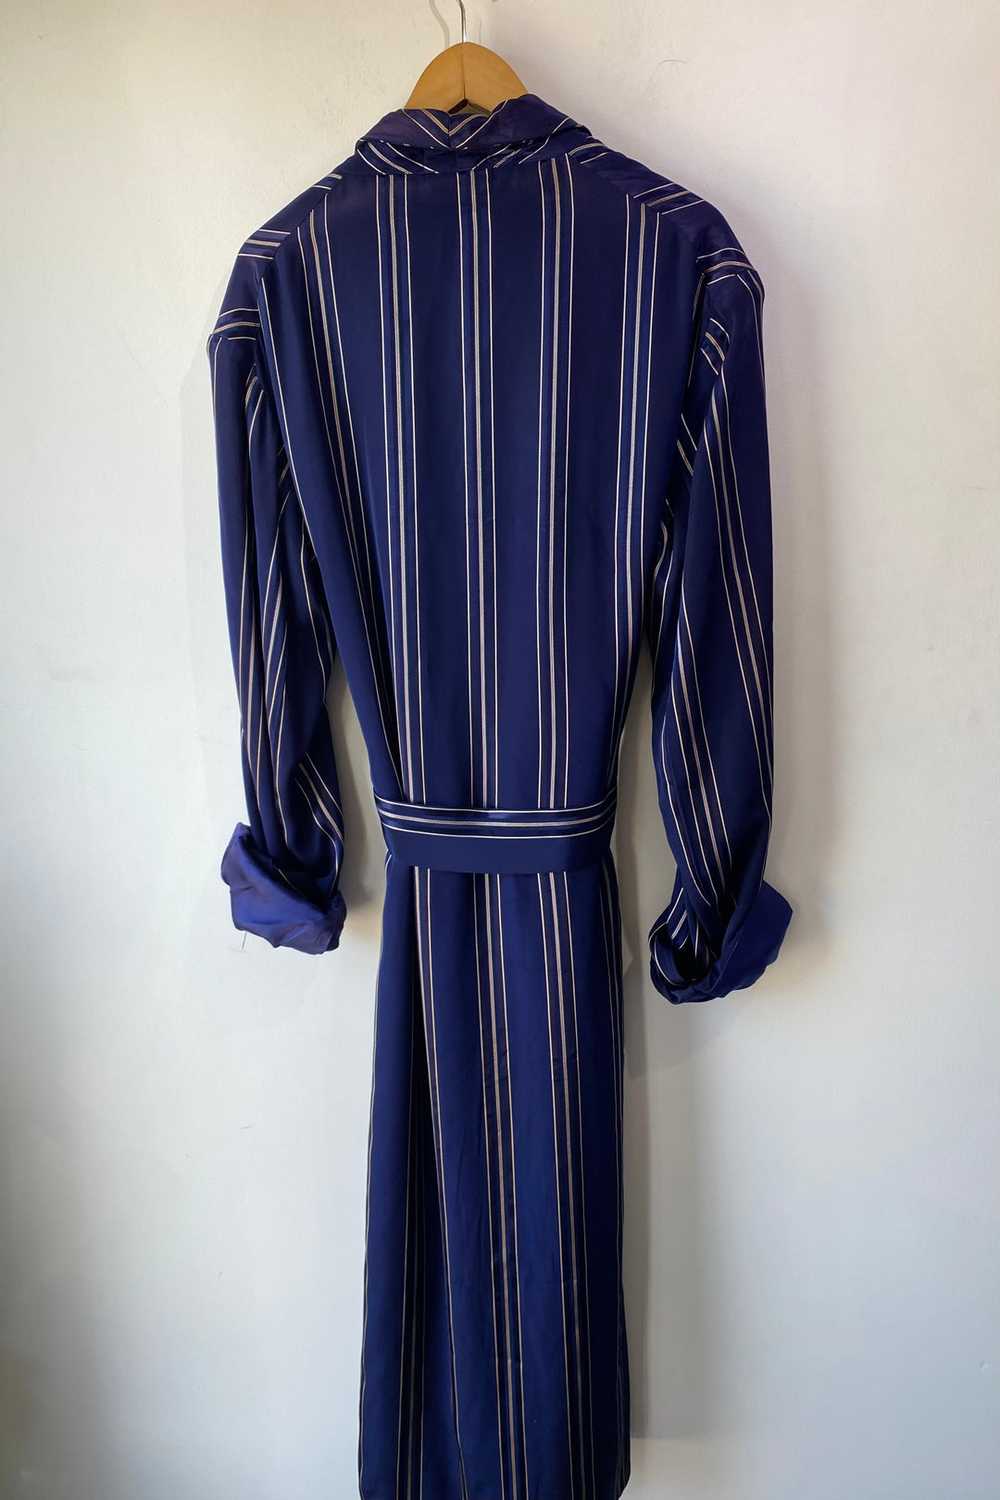 Vintage Broadmoor Navy Blue Silk Robe - image 3